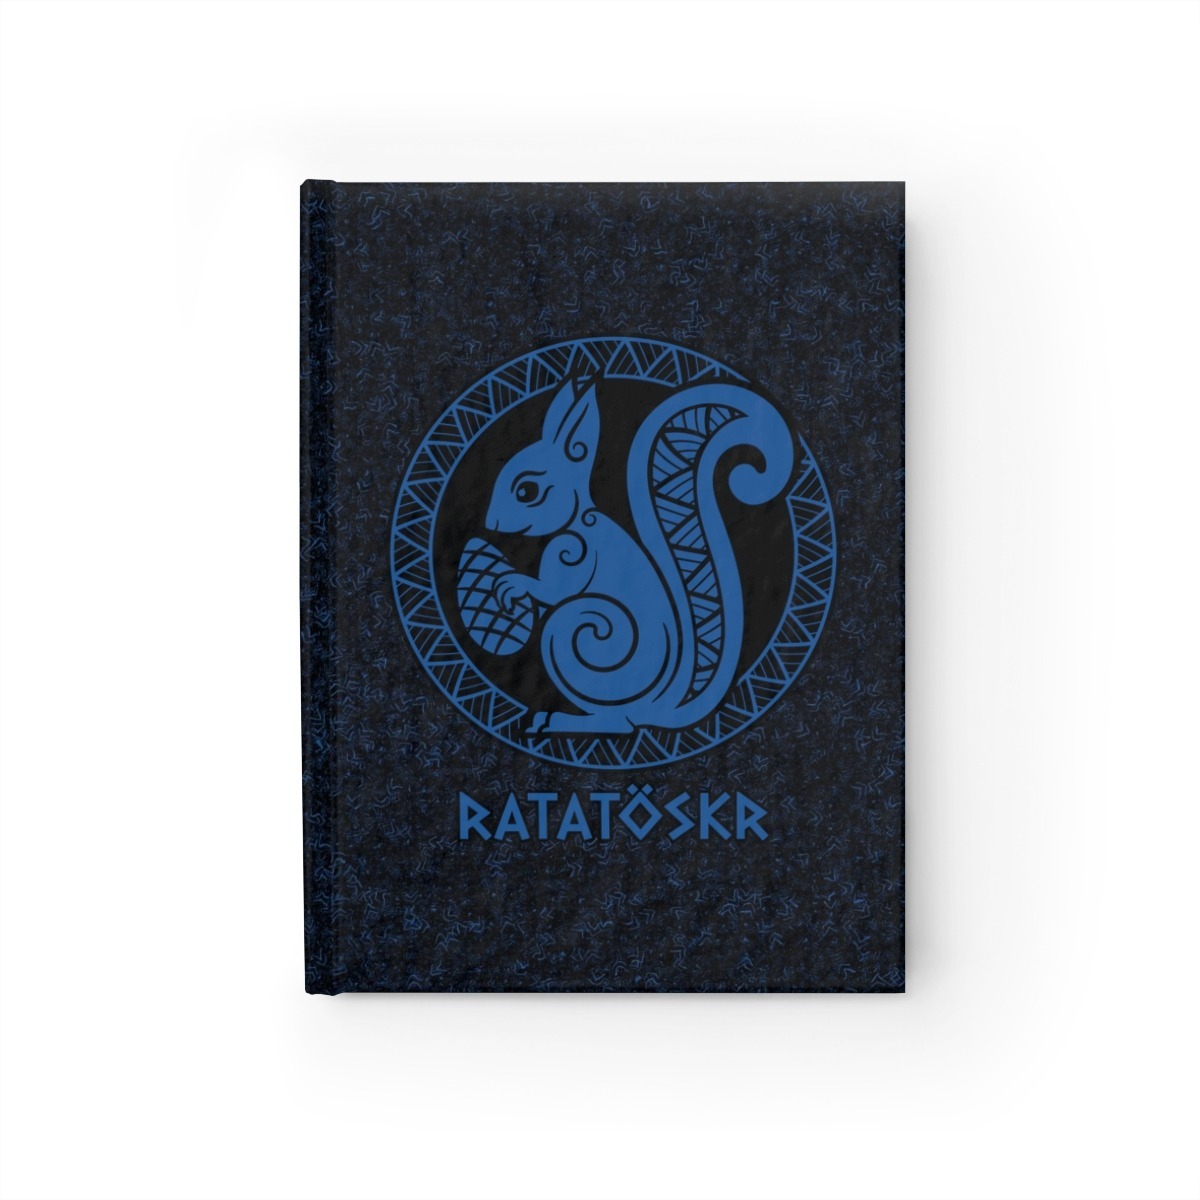 Royal Blue Ratatoskr Journal – Ruled Line